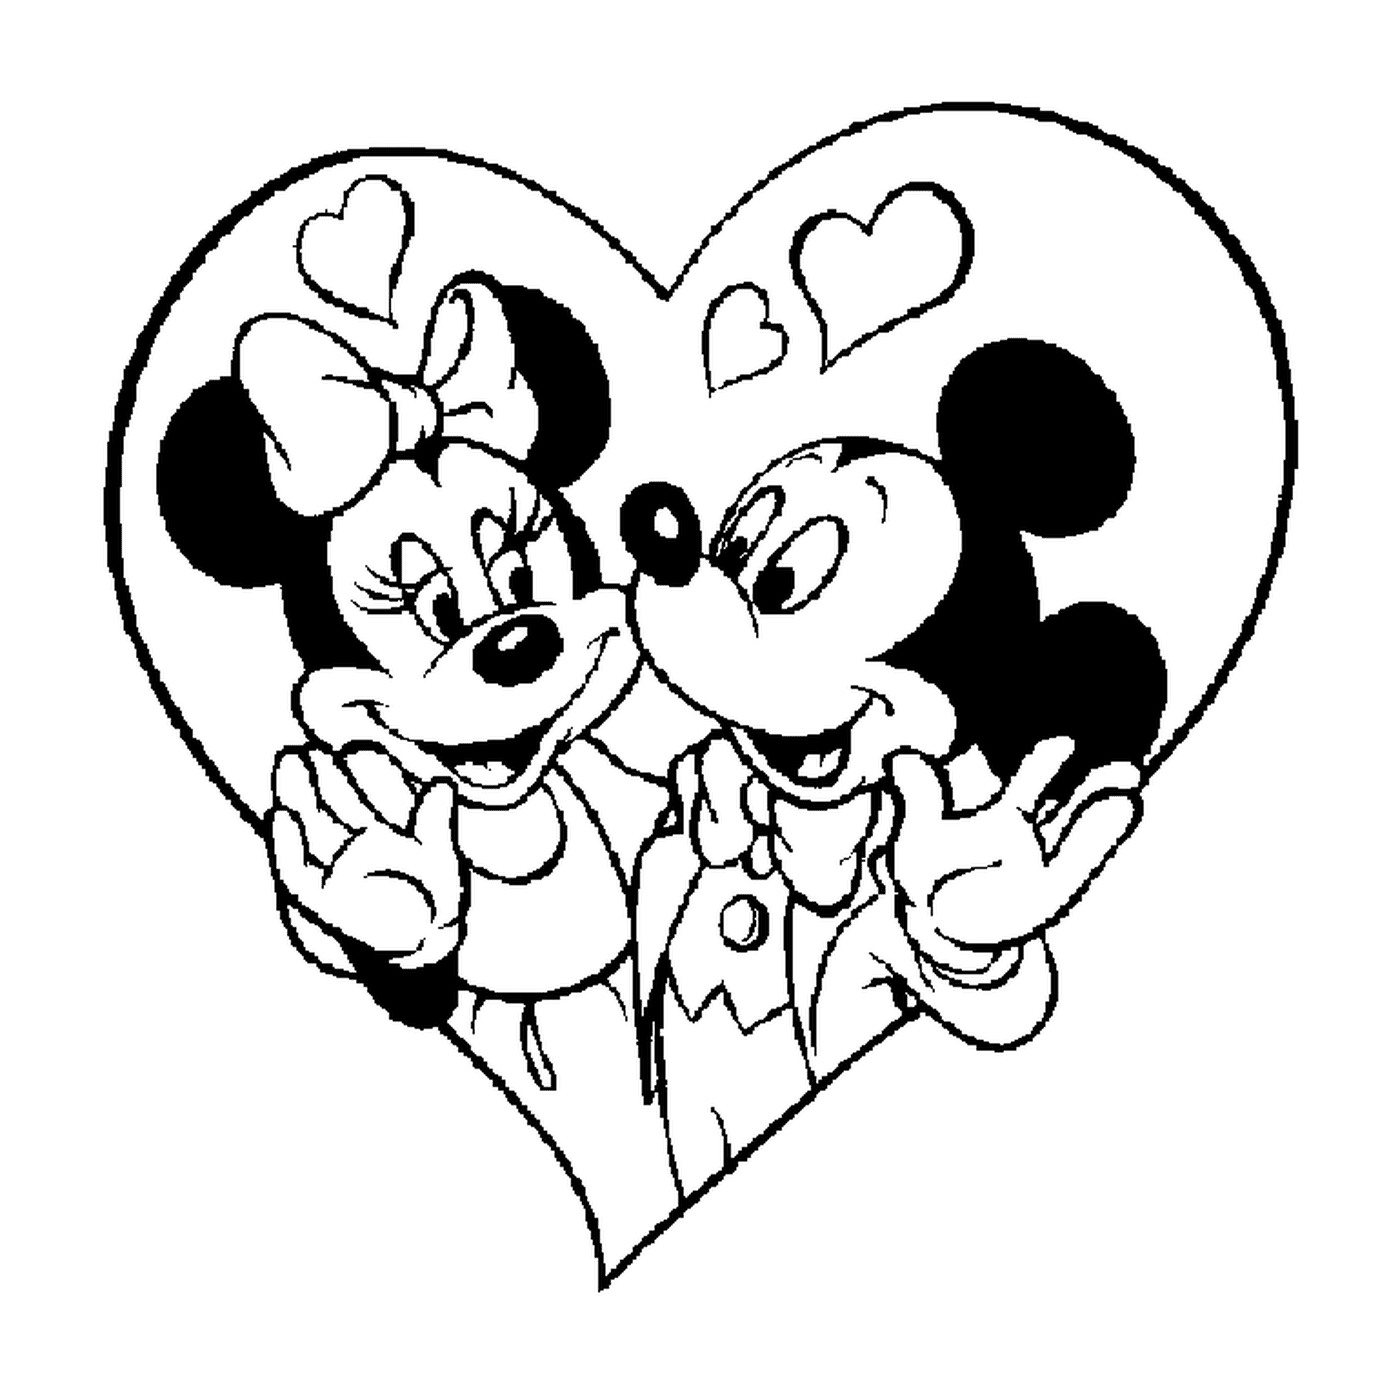  Микки и Минни Маус в сердце 